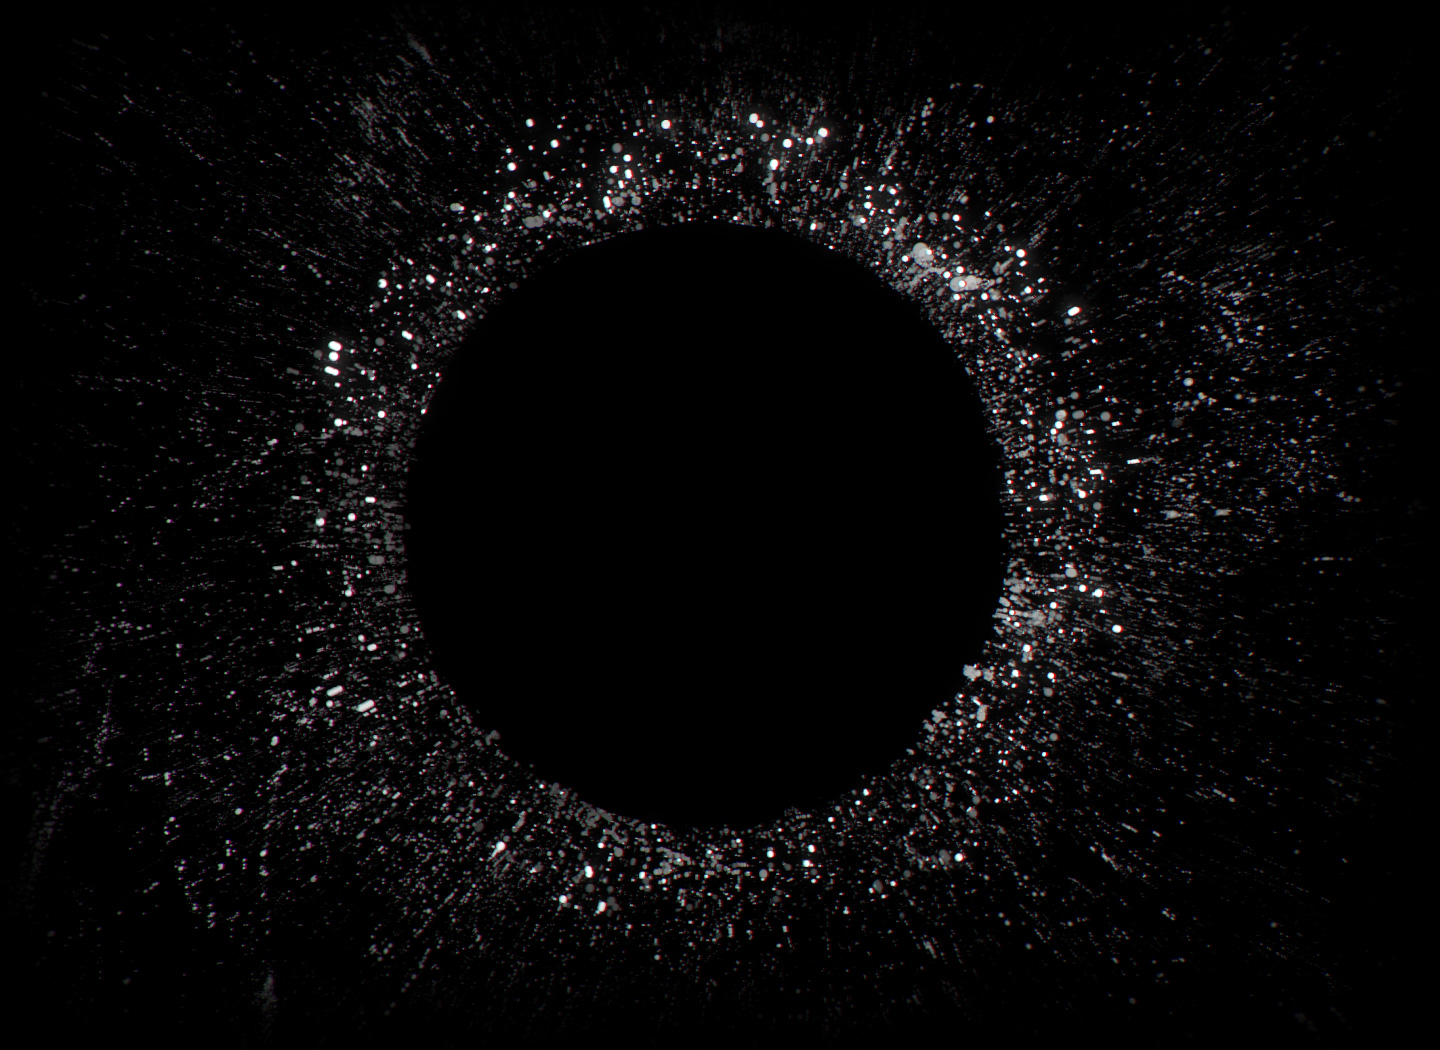 Animatie van rechteroortje in het midden van een cirkel met kleine ruisdeeltjes die worden afgestoten.